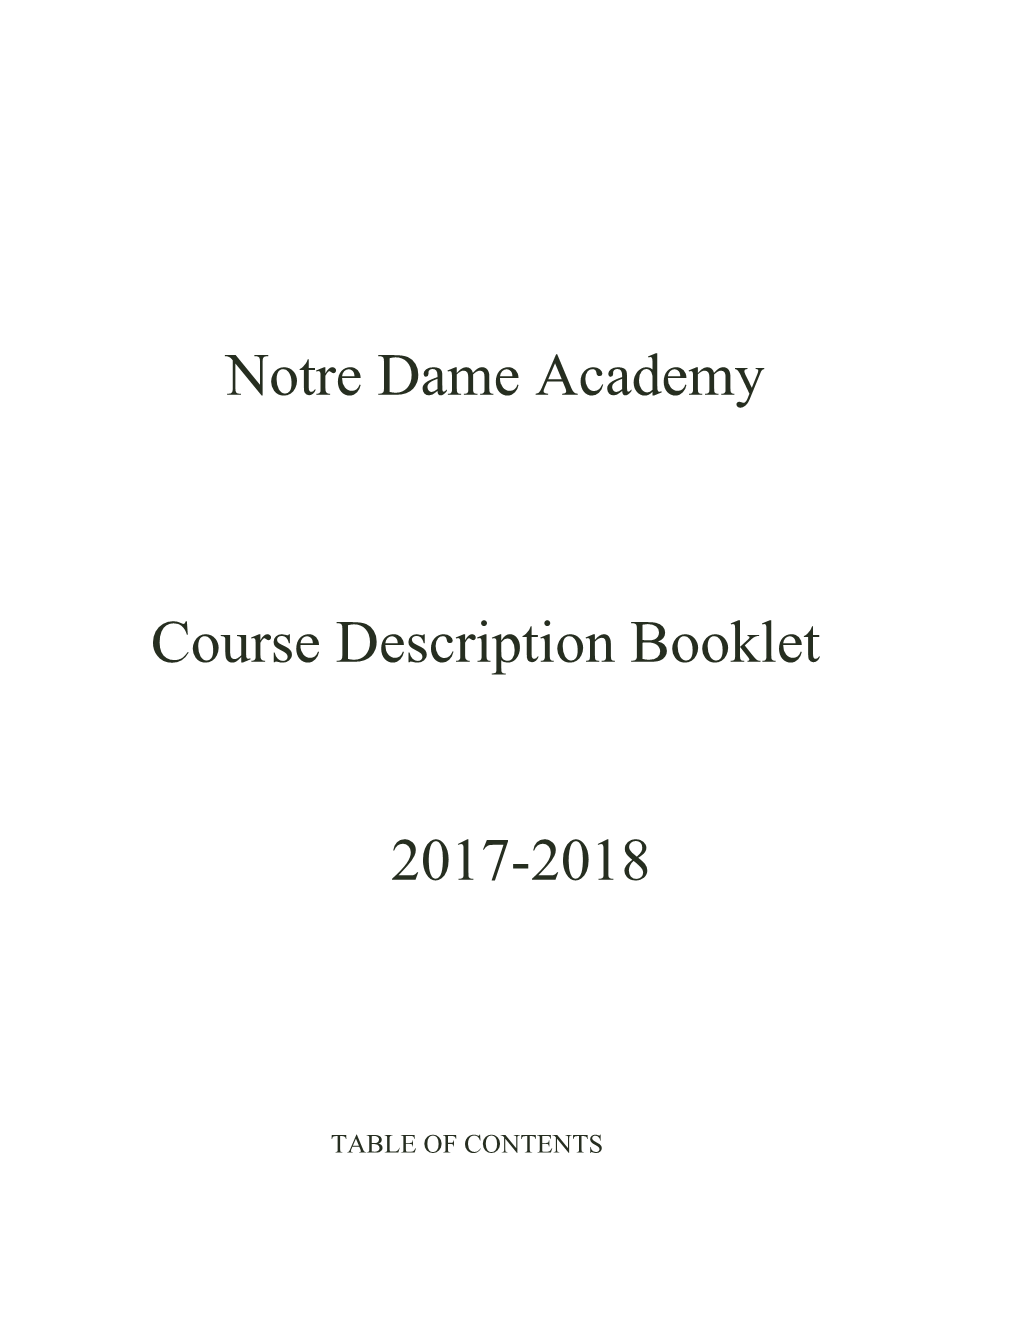 Course Description Booklet